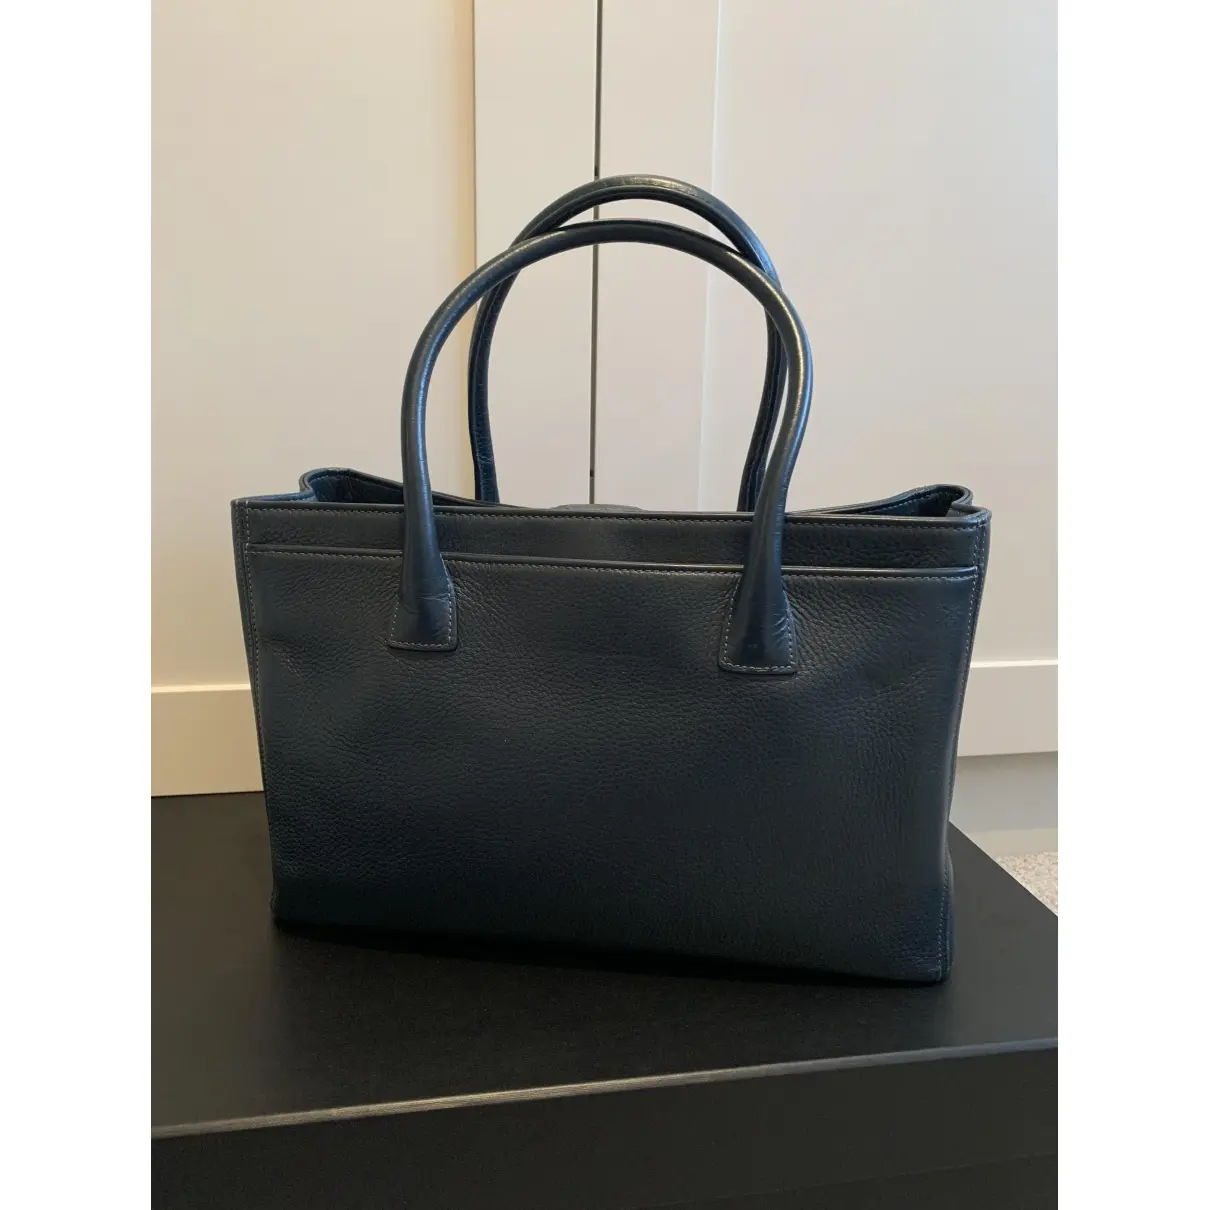 Chanel Executive leather handbag for sale